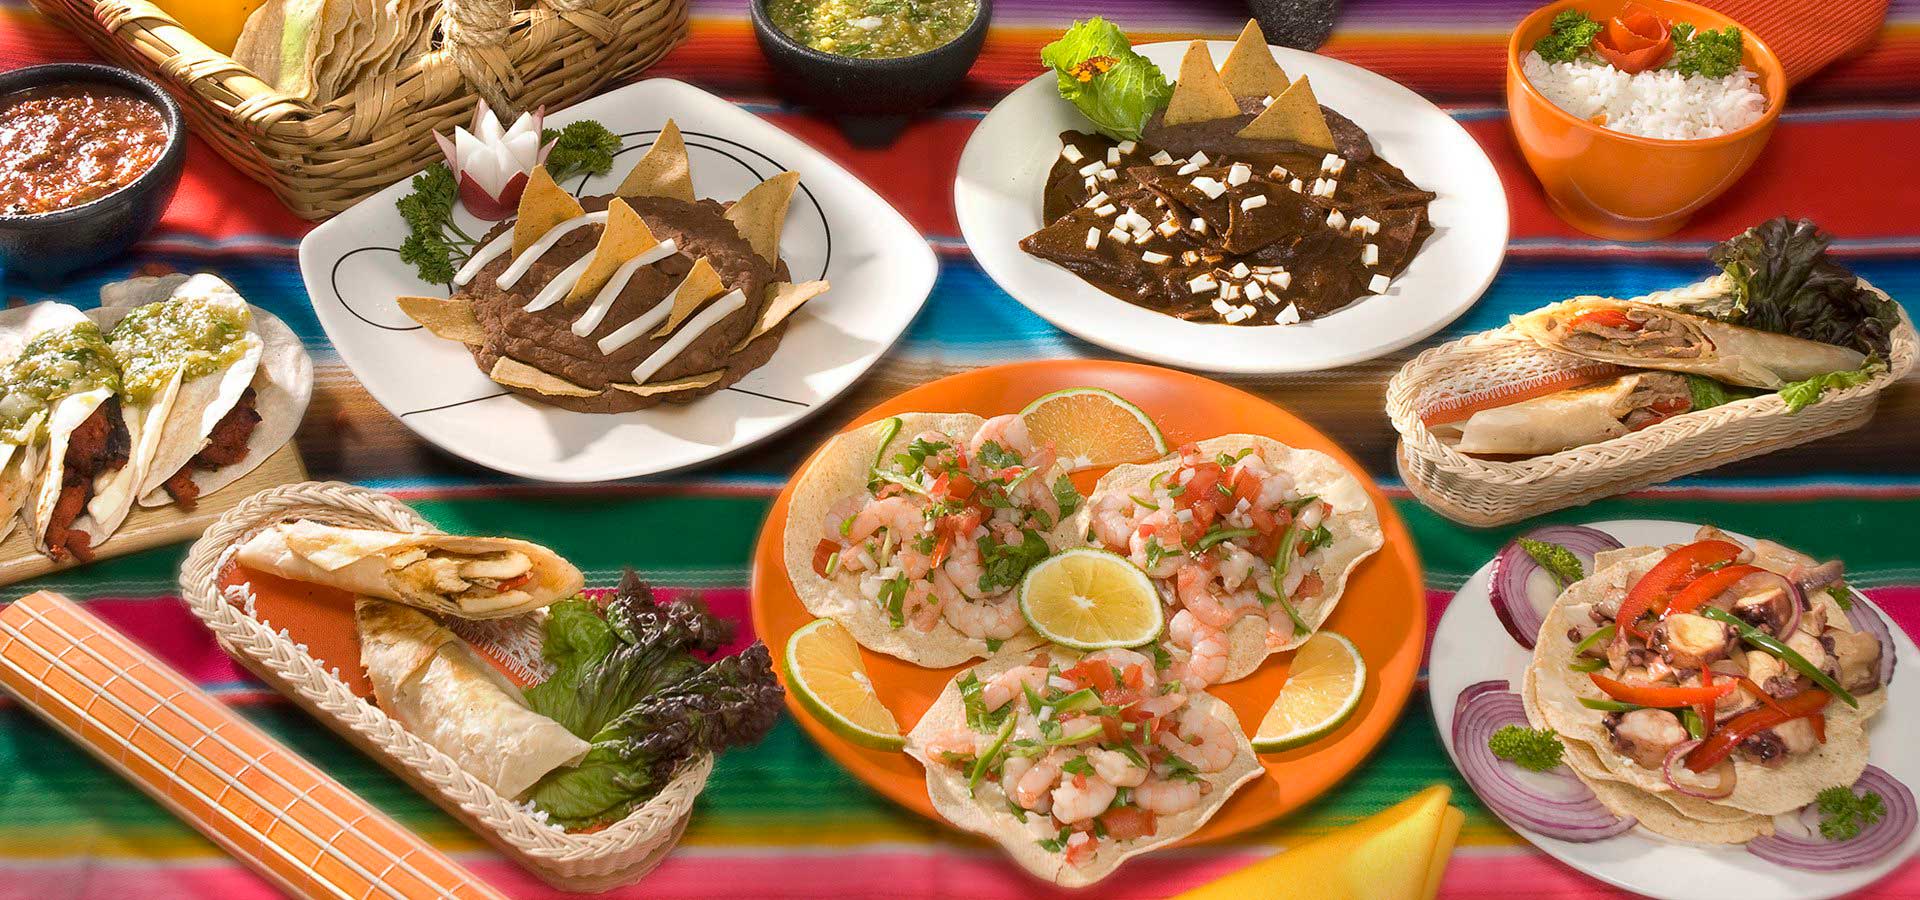 gastronom-a-a-la-mexicana-2000agro-revista-industrial-del-campo